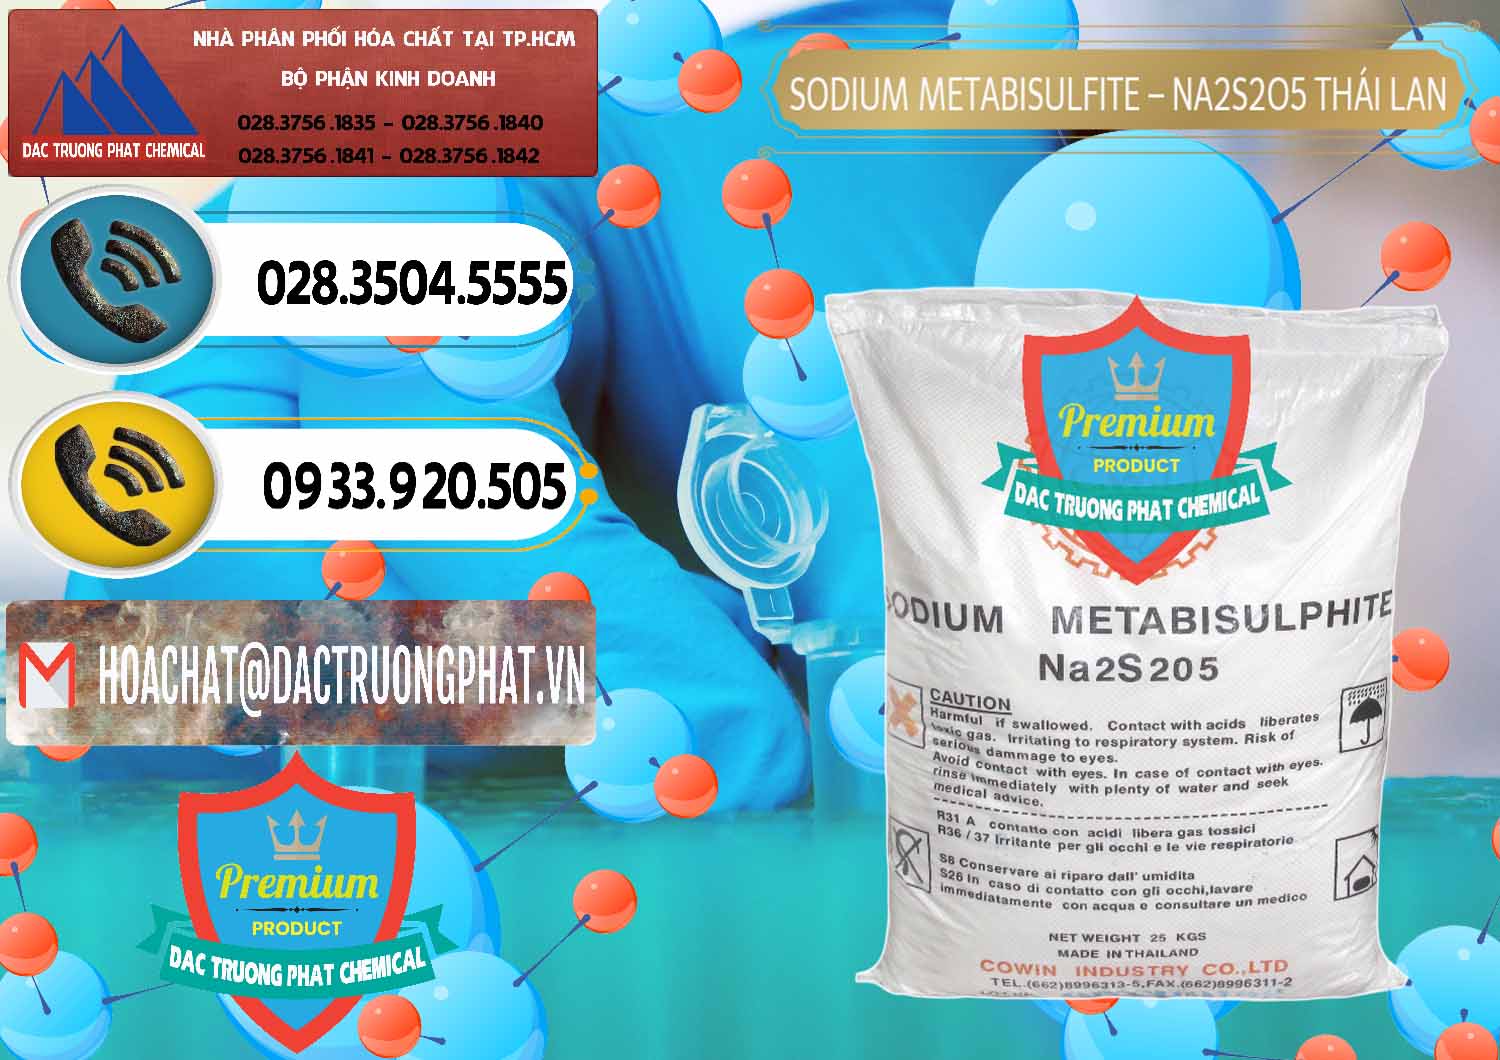 Chuyên phân phối _ bán Sodium Metabisulfite - NA2S2O5 Thái Lan Cowin - 0145 - Cty chuyên bán _ phân phối hóa chất tại TP.HCM - hoachatdetnhuom.vn